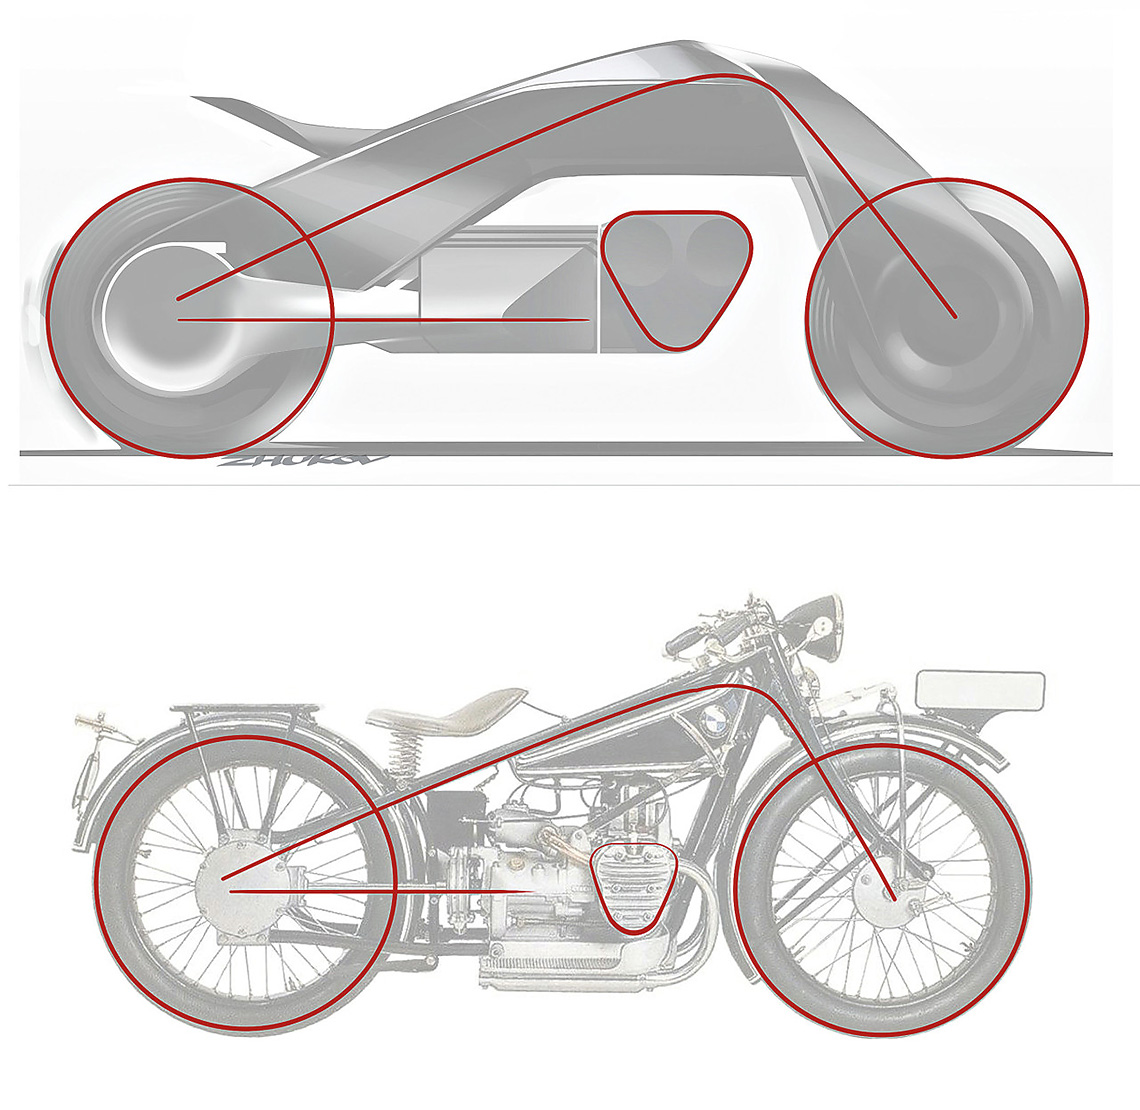 Stilistisch BMW Motorrad Vision Next 100 ähnelt vage dem allerersten Motorrad der Marke – dem 23 erschienenen BMW R1923 (basierend auf dem Motorrad der britischen Firma Douglas).